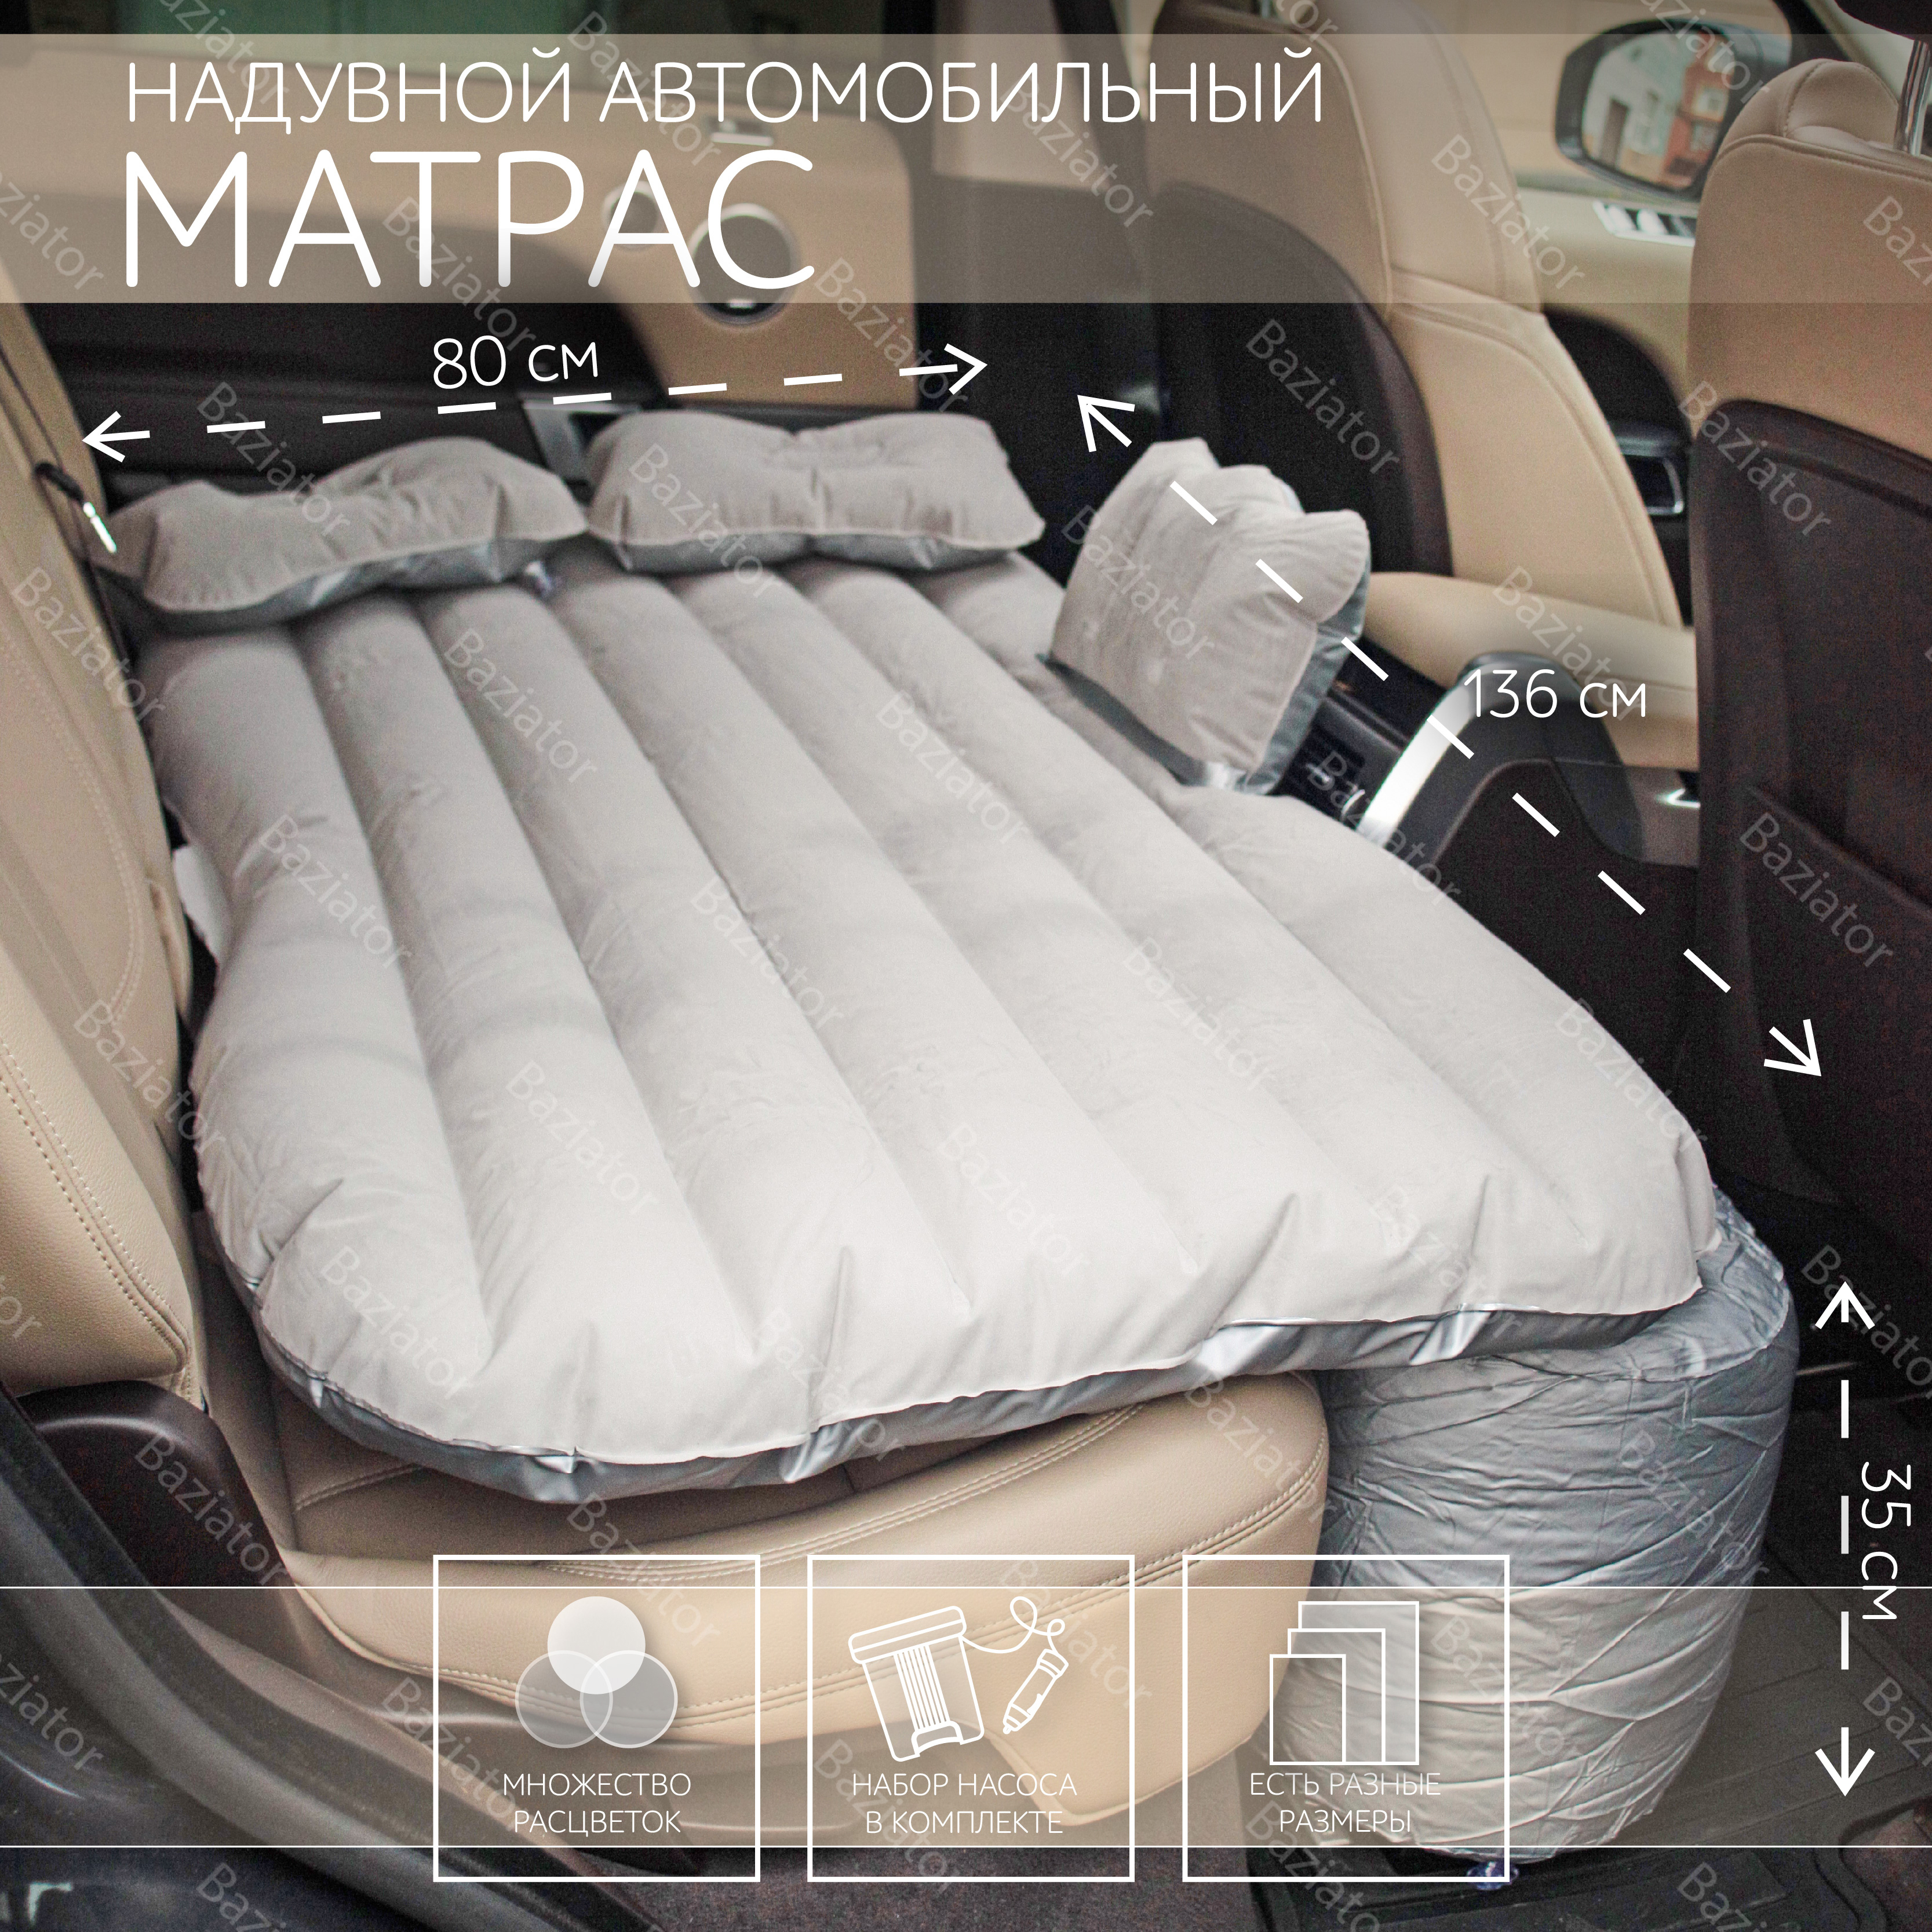 Надувной автомобильный матрас для заднего сиденья